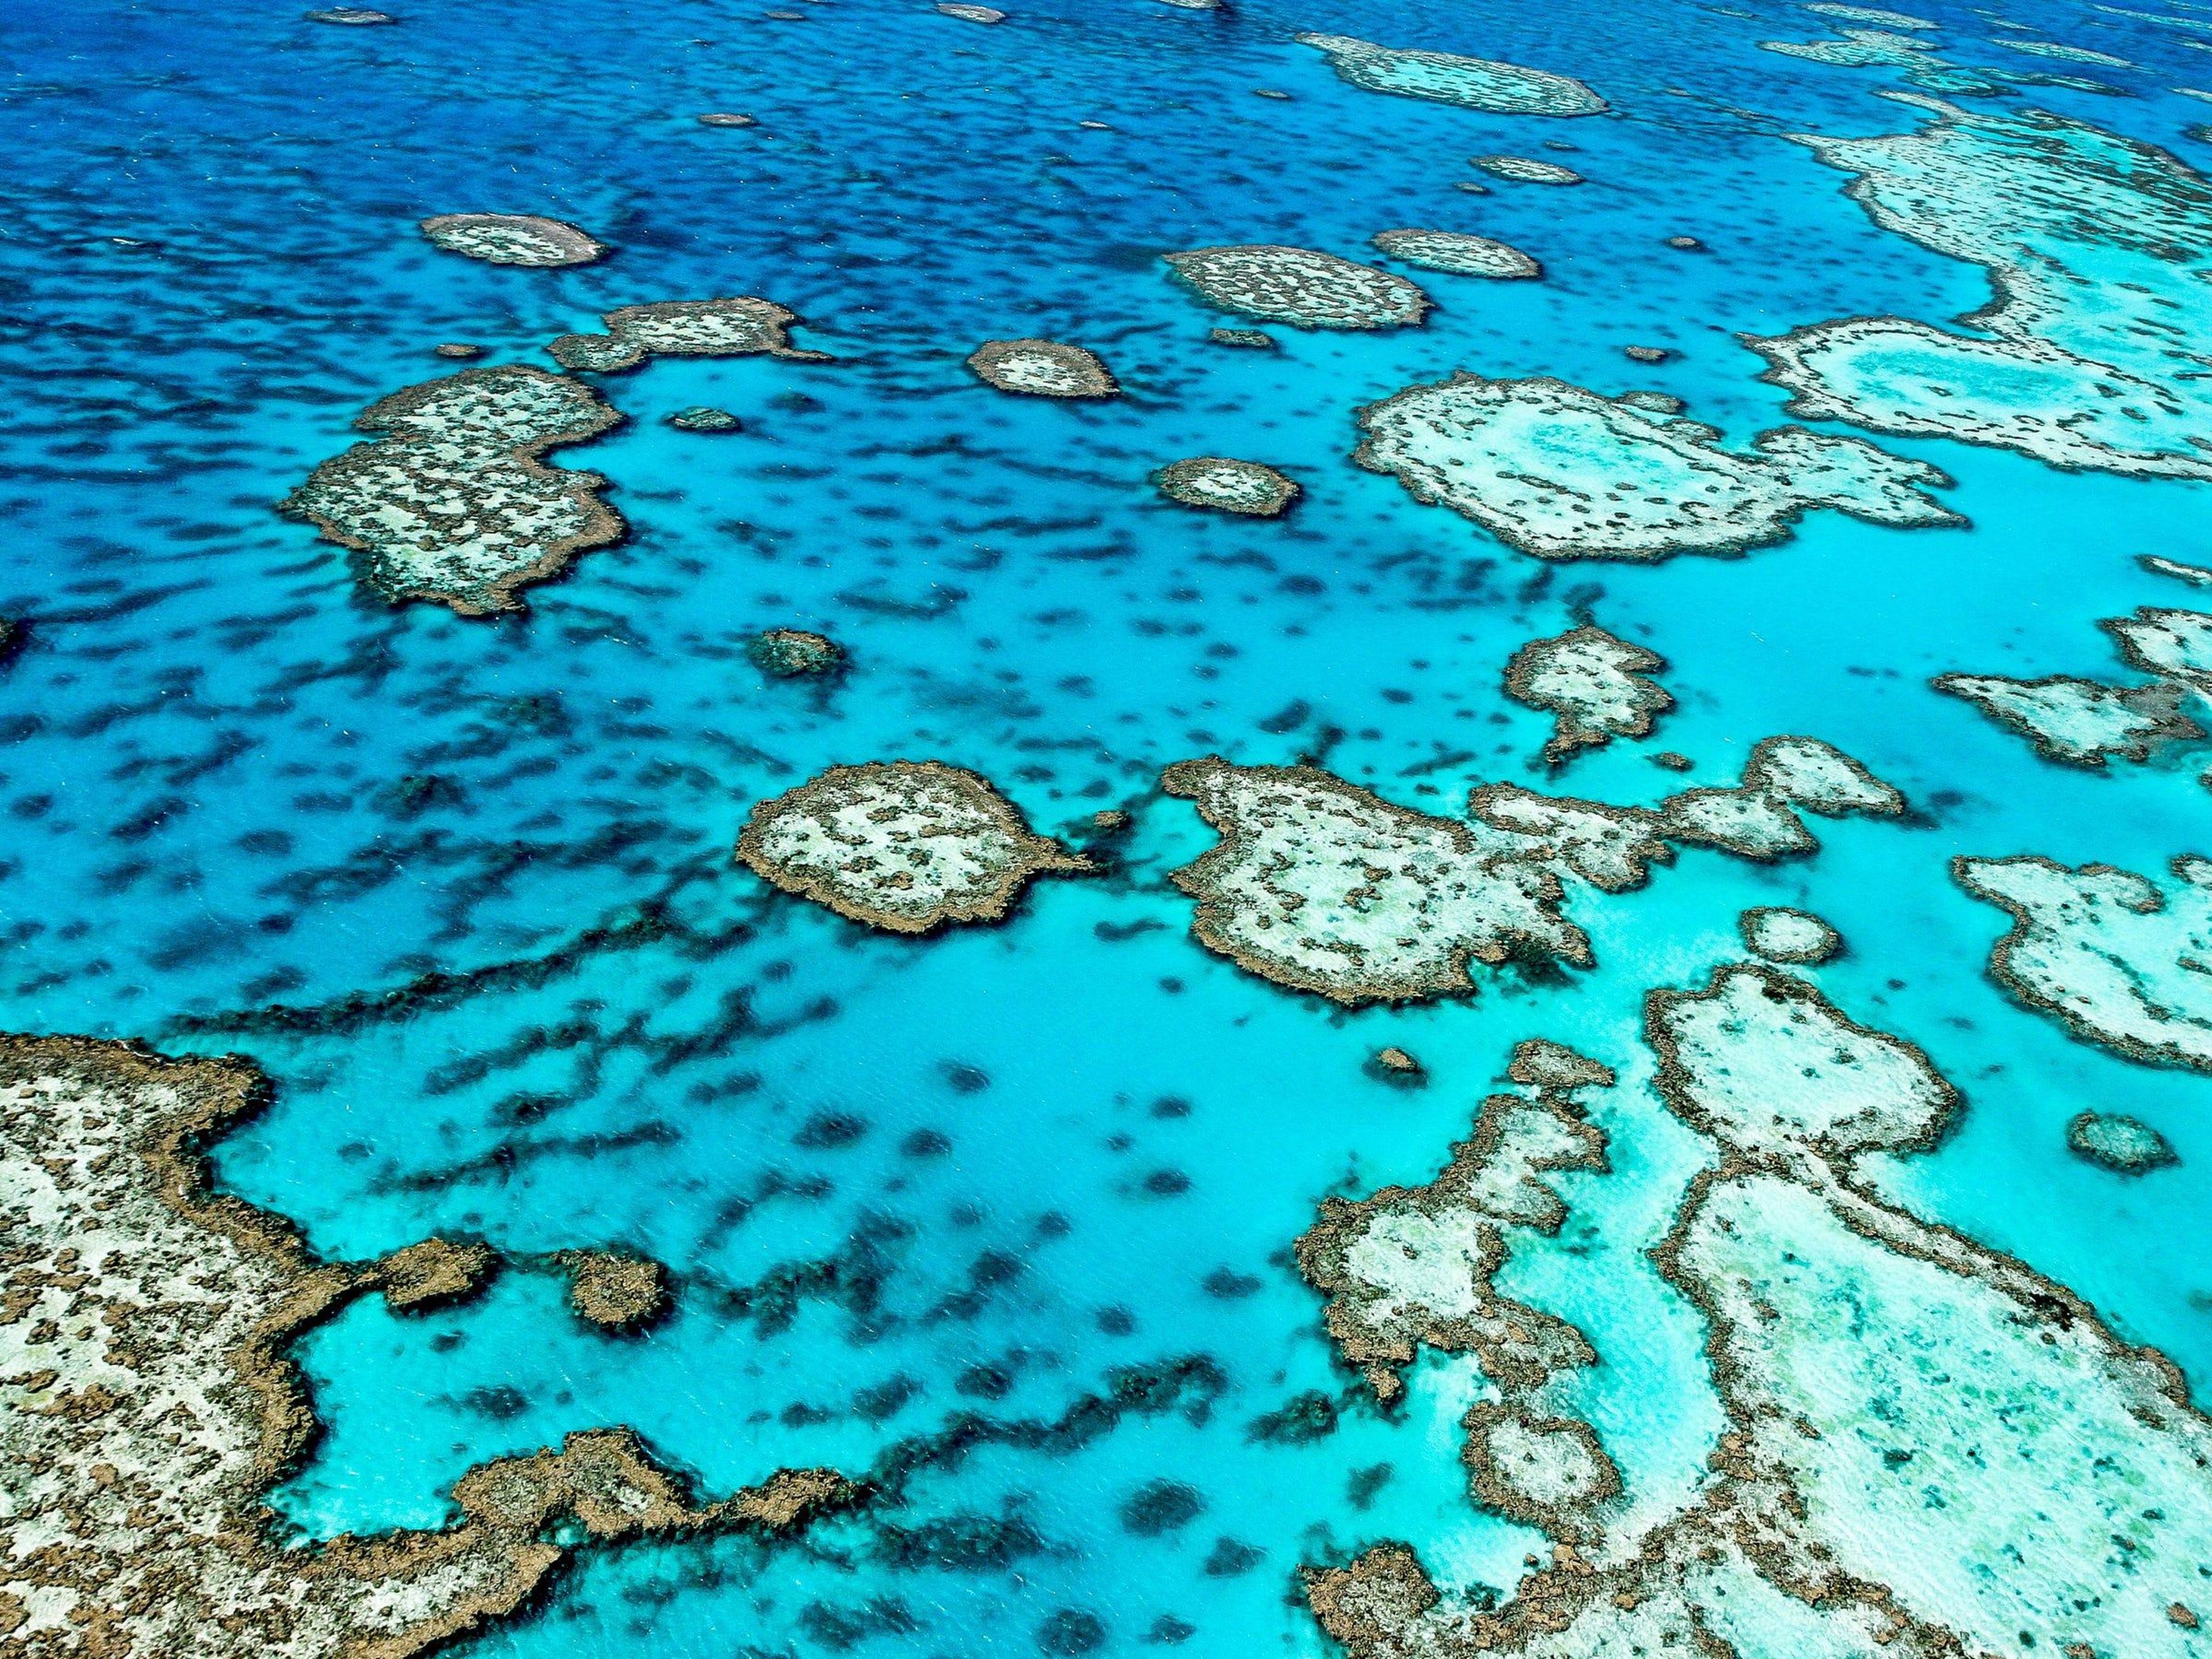 La Gran Barrera de Coral de Australia es el sistema de arrecifes de coral más grande del mundo.